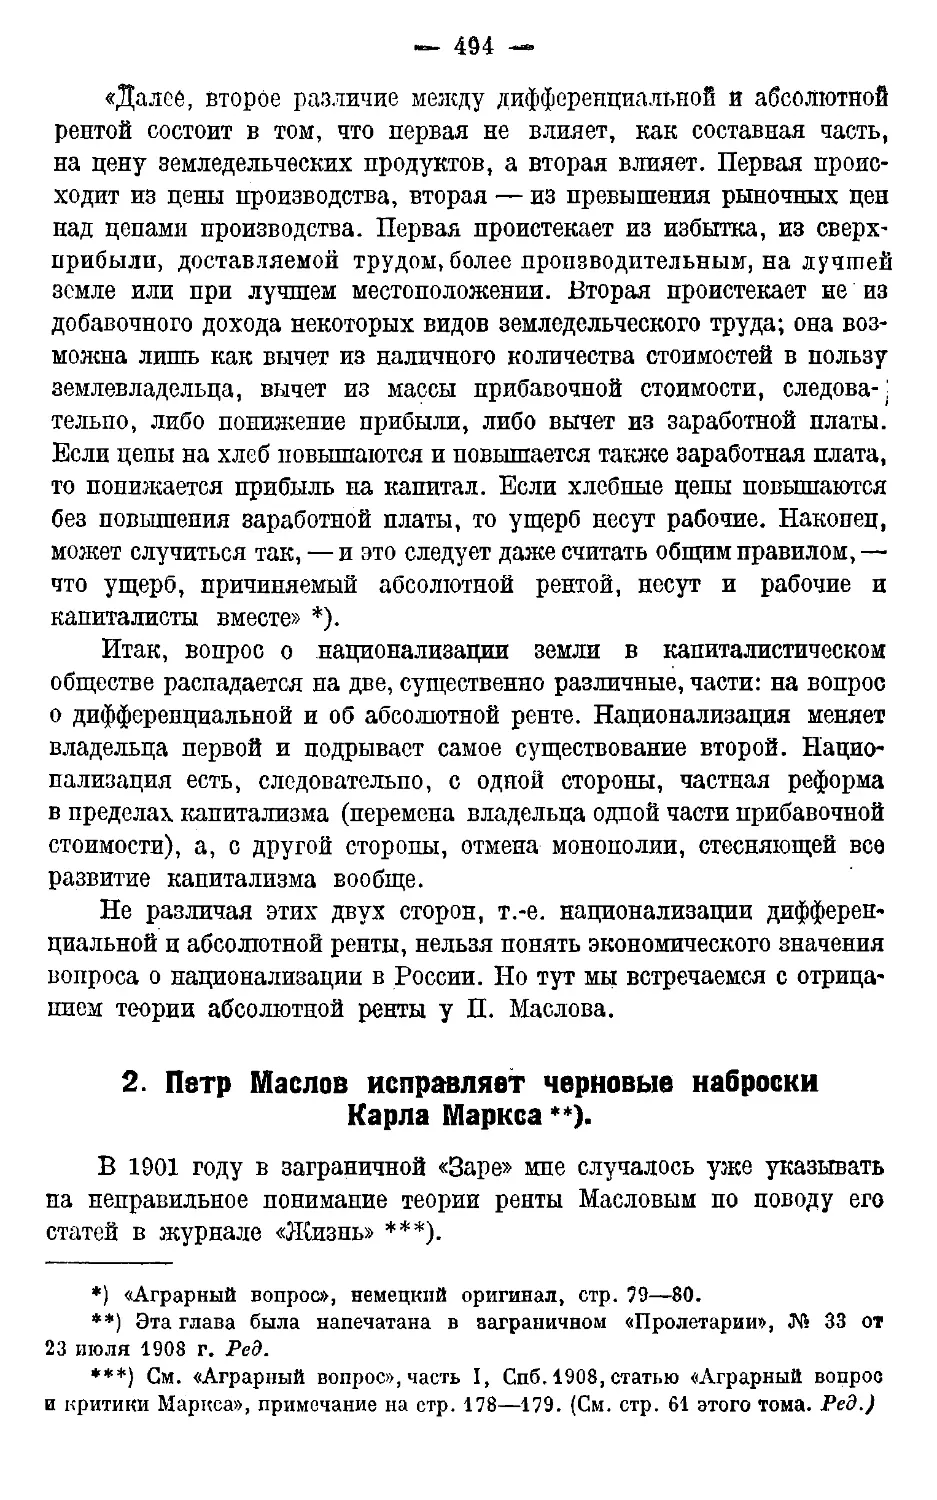 2. П. Маслов исправляет черновые наброски К. Маркса.